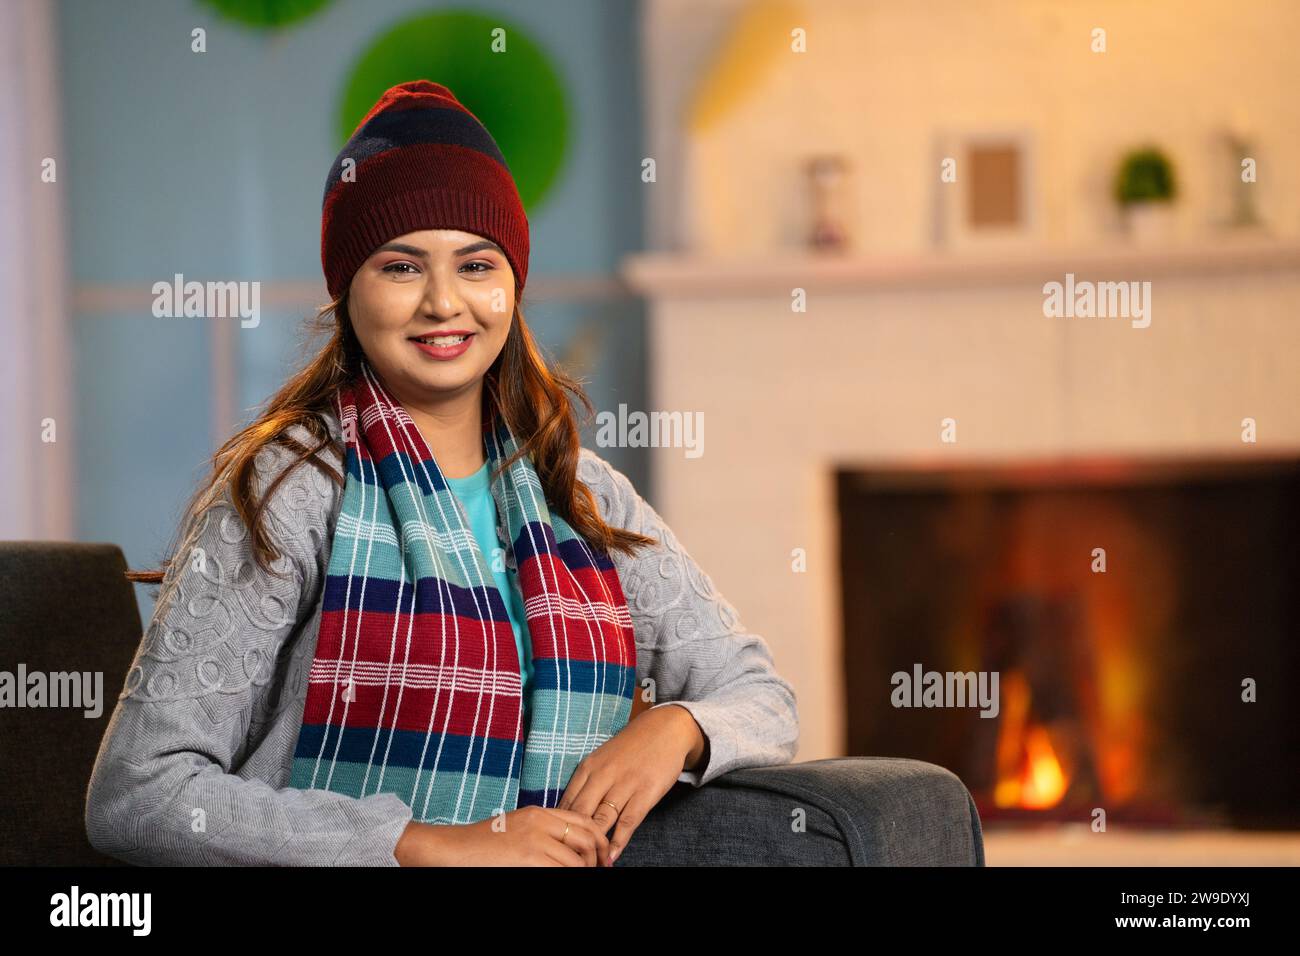 Ritratto di una donna indiana sorridente con un caldo abbigliamento invernale che guarda la macchina fotografica sul divano a casa - concetto di relax, spensieratezza e benessere Foto Stock